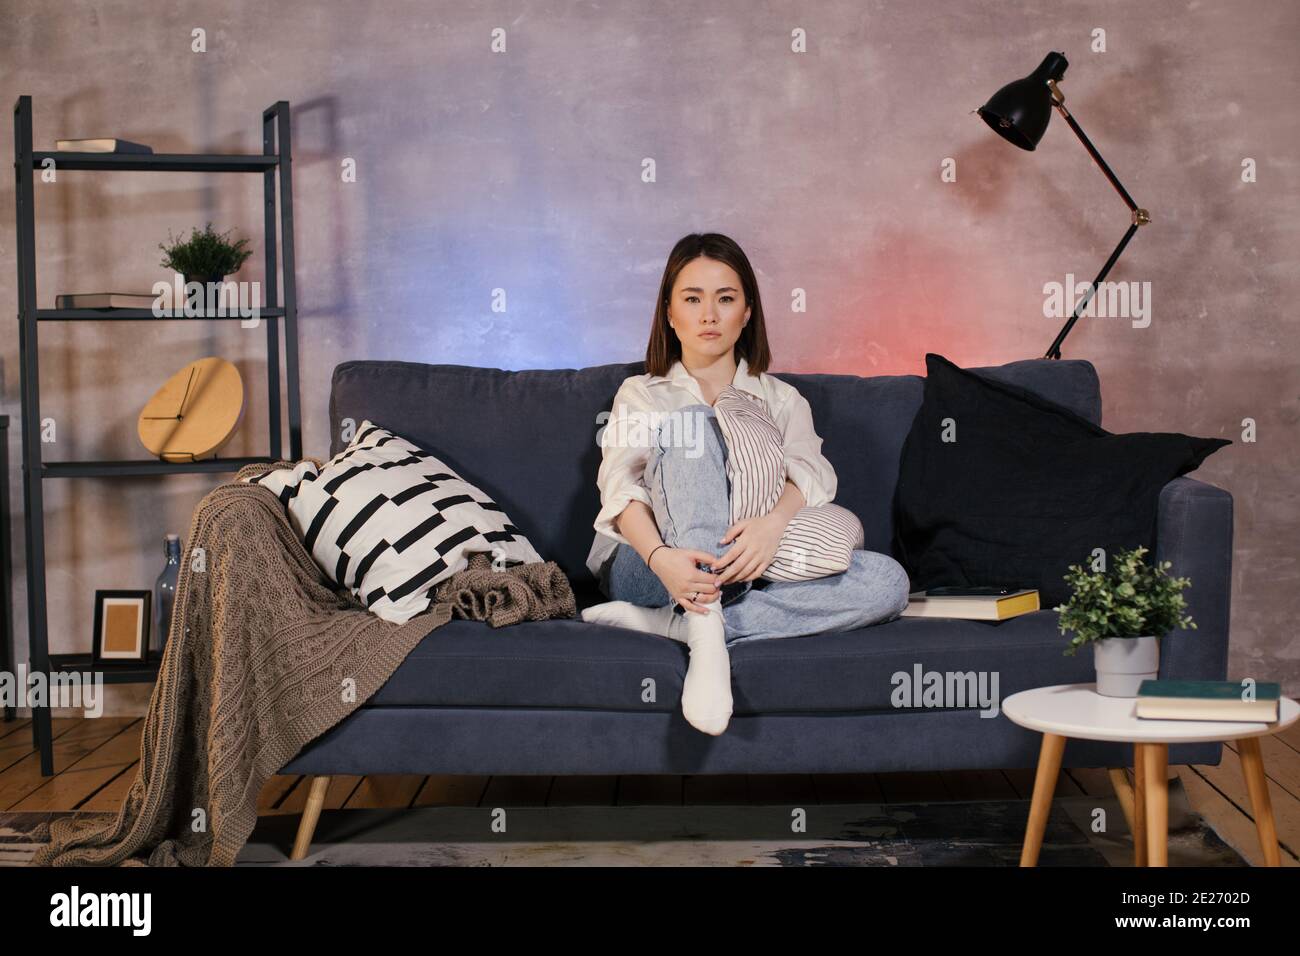 Una donna seduta su un divano in un accogliente camera a guardare la TV e sconvolto da ciò che vede sullo schermo Foto Stock